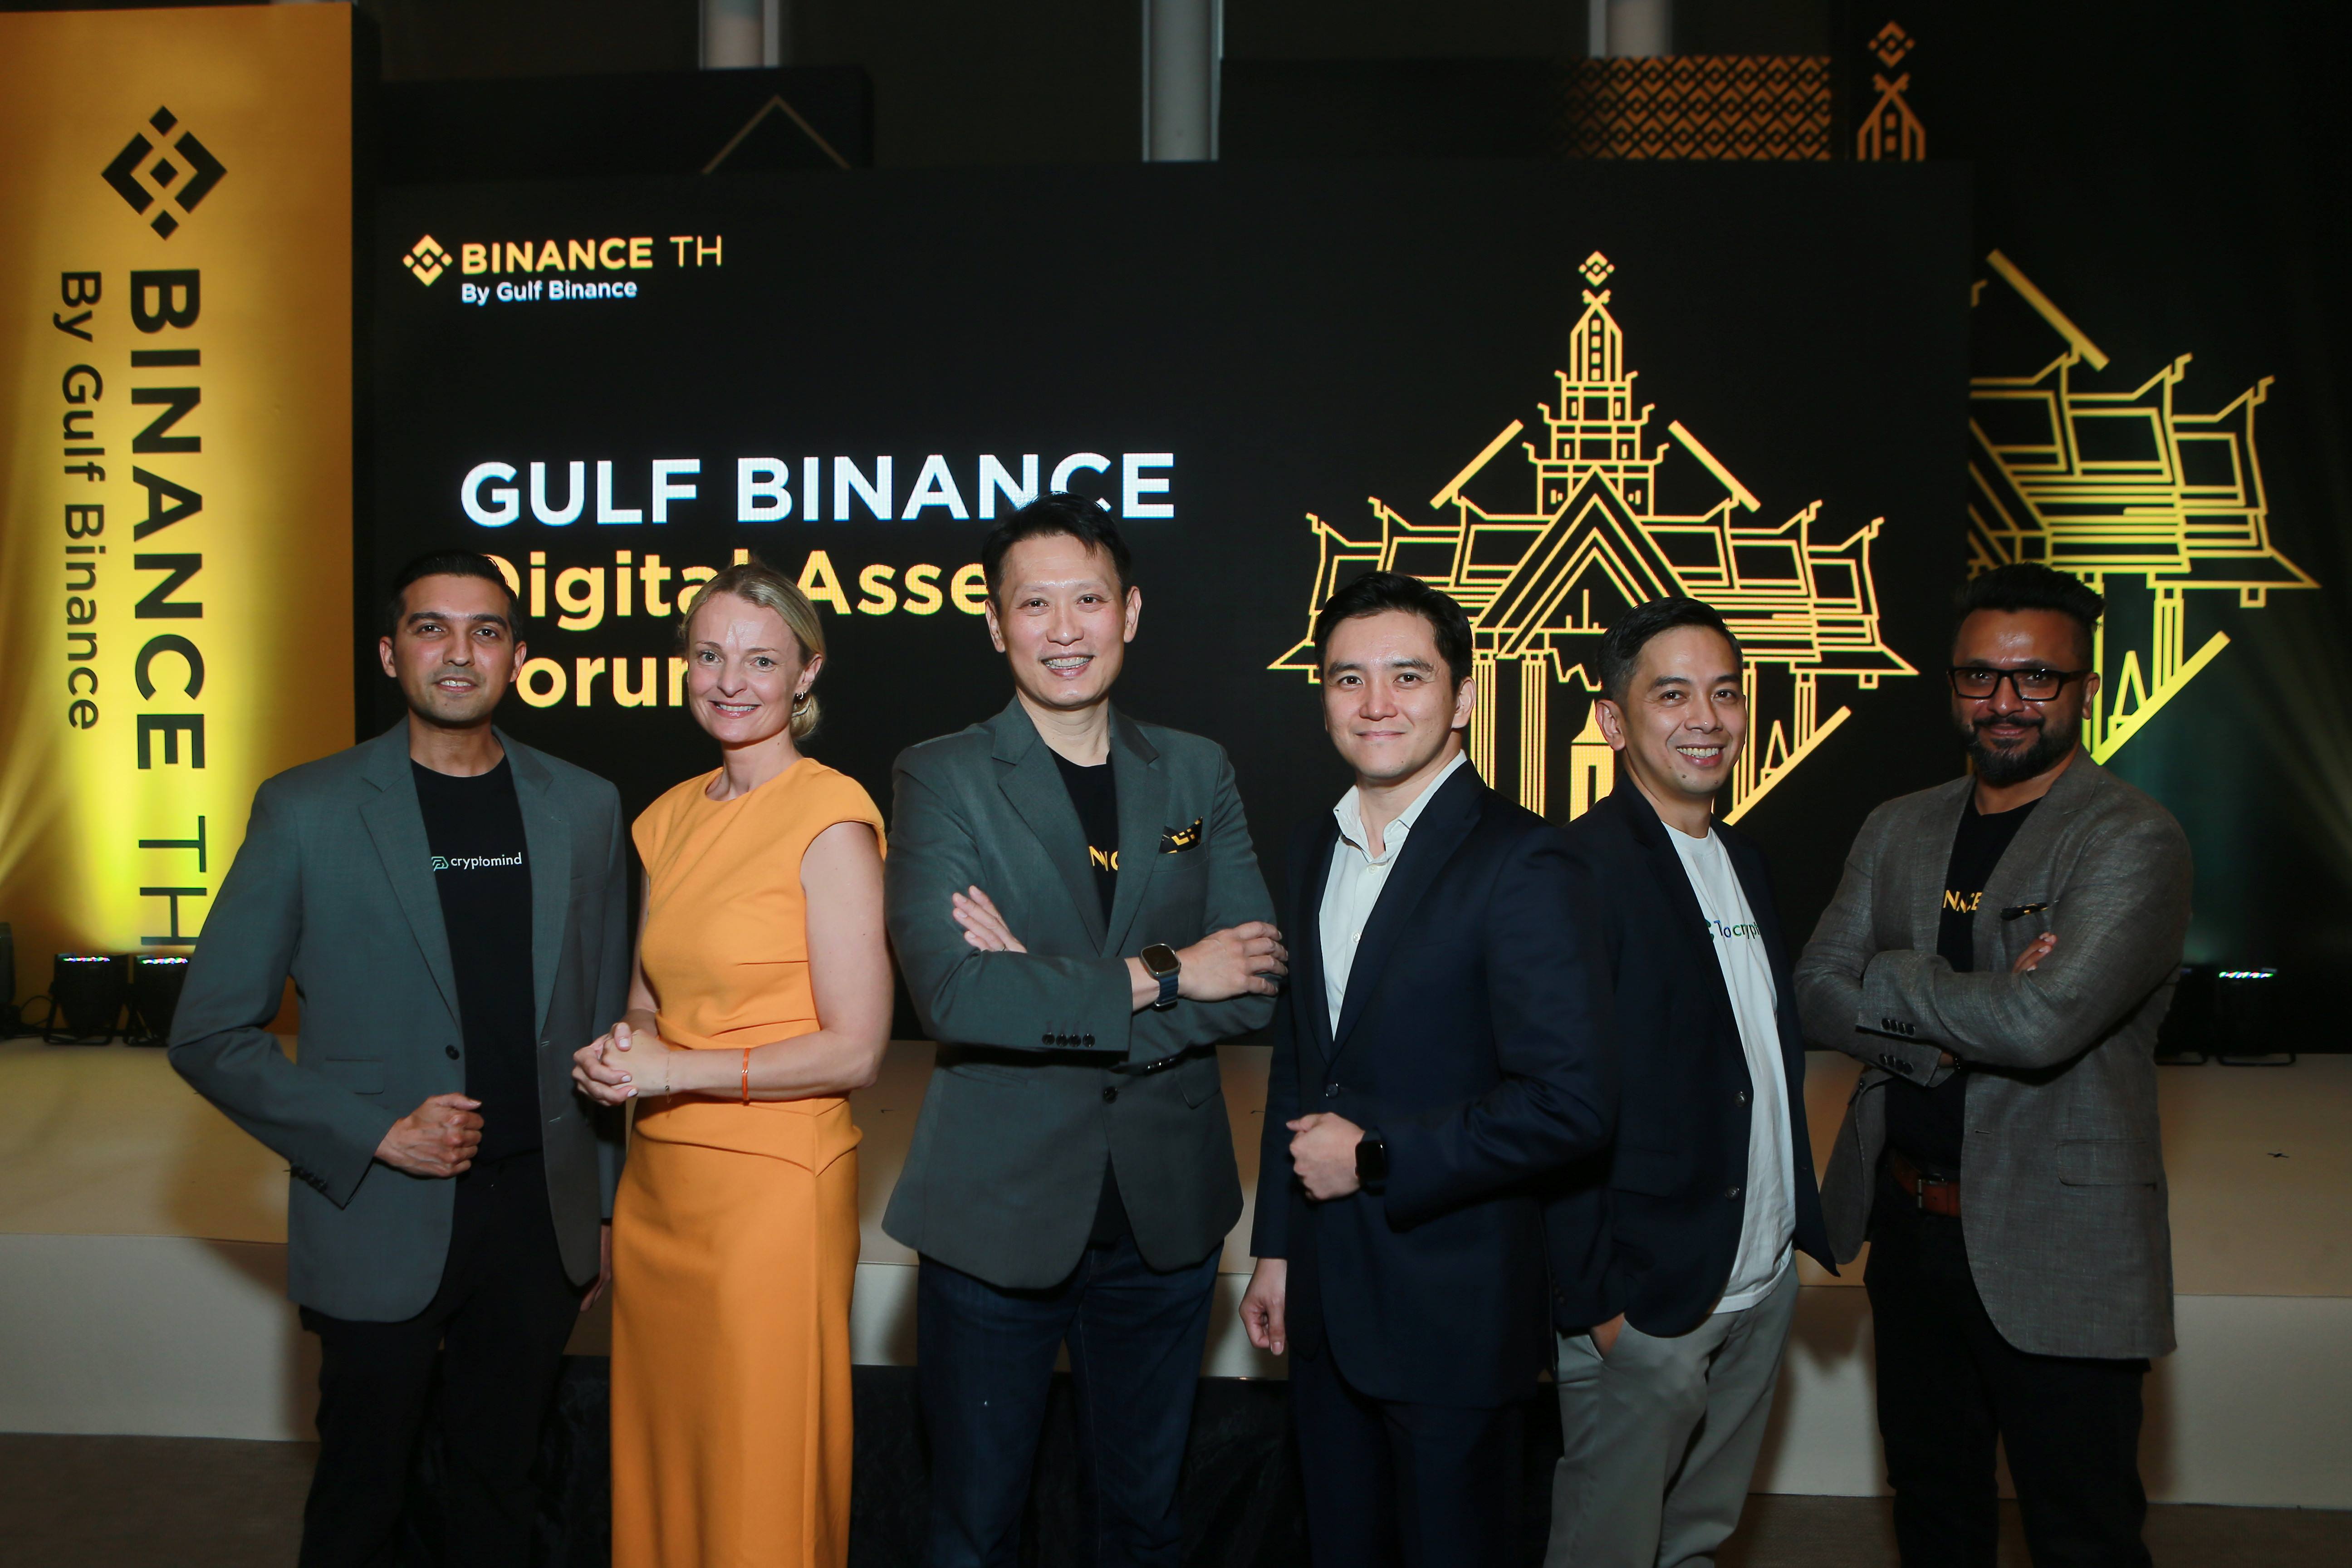 สรุปประเด็นหลักจากงาน 'Gulf Binance: Digital Asset Forum'